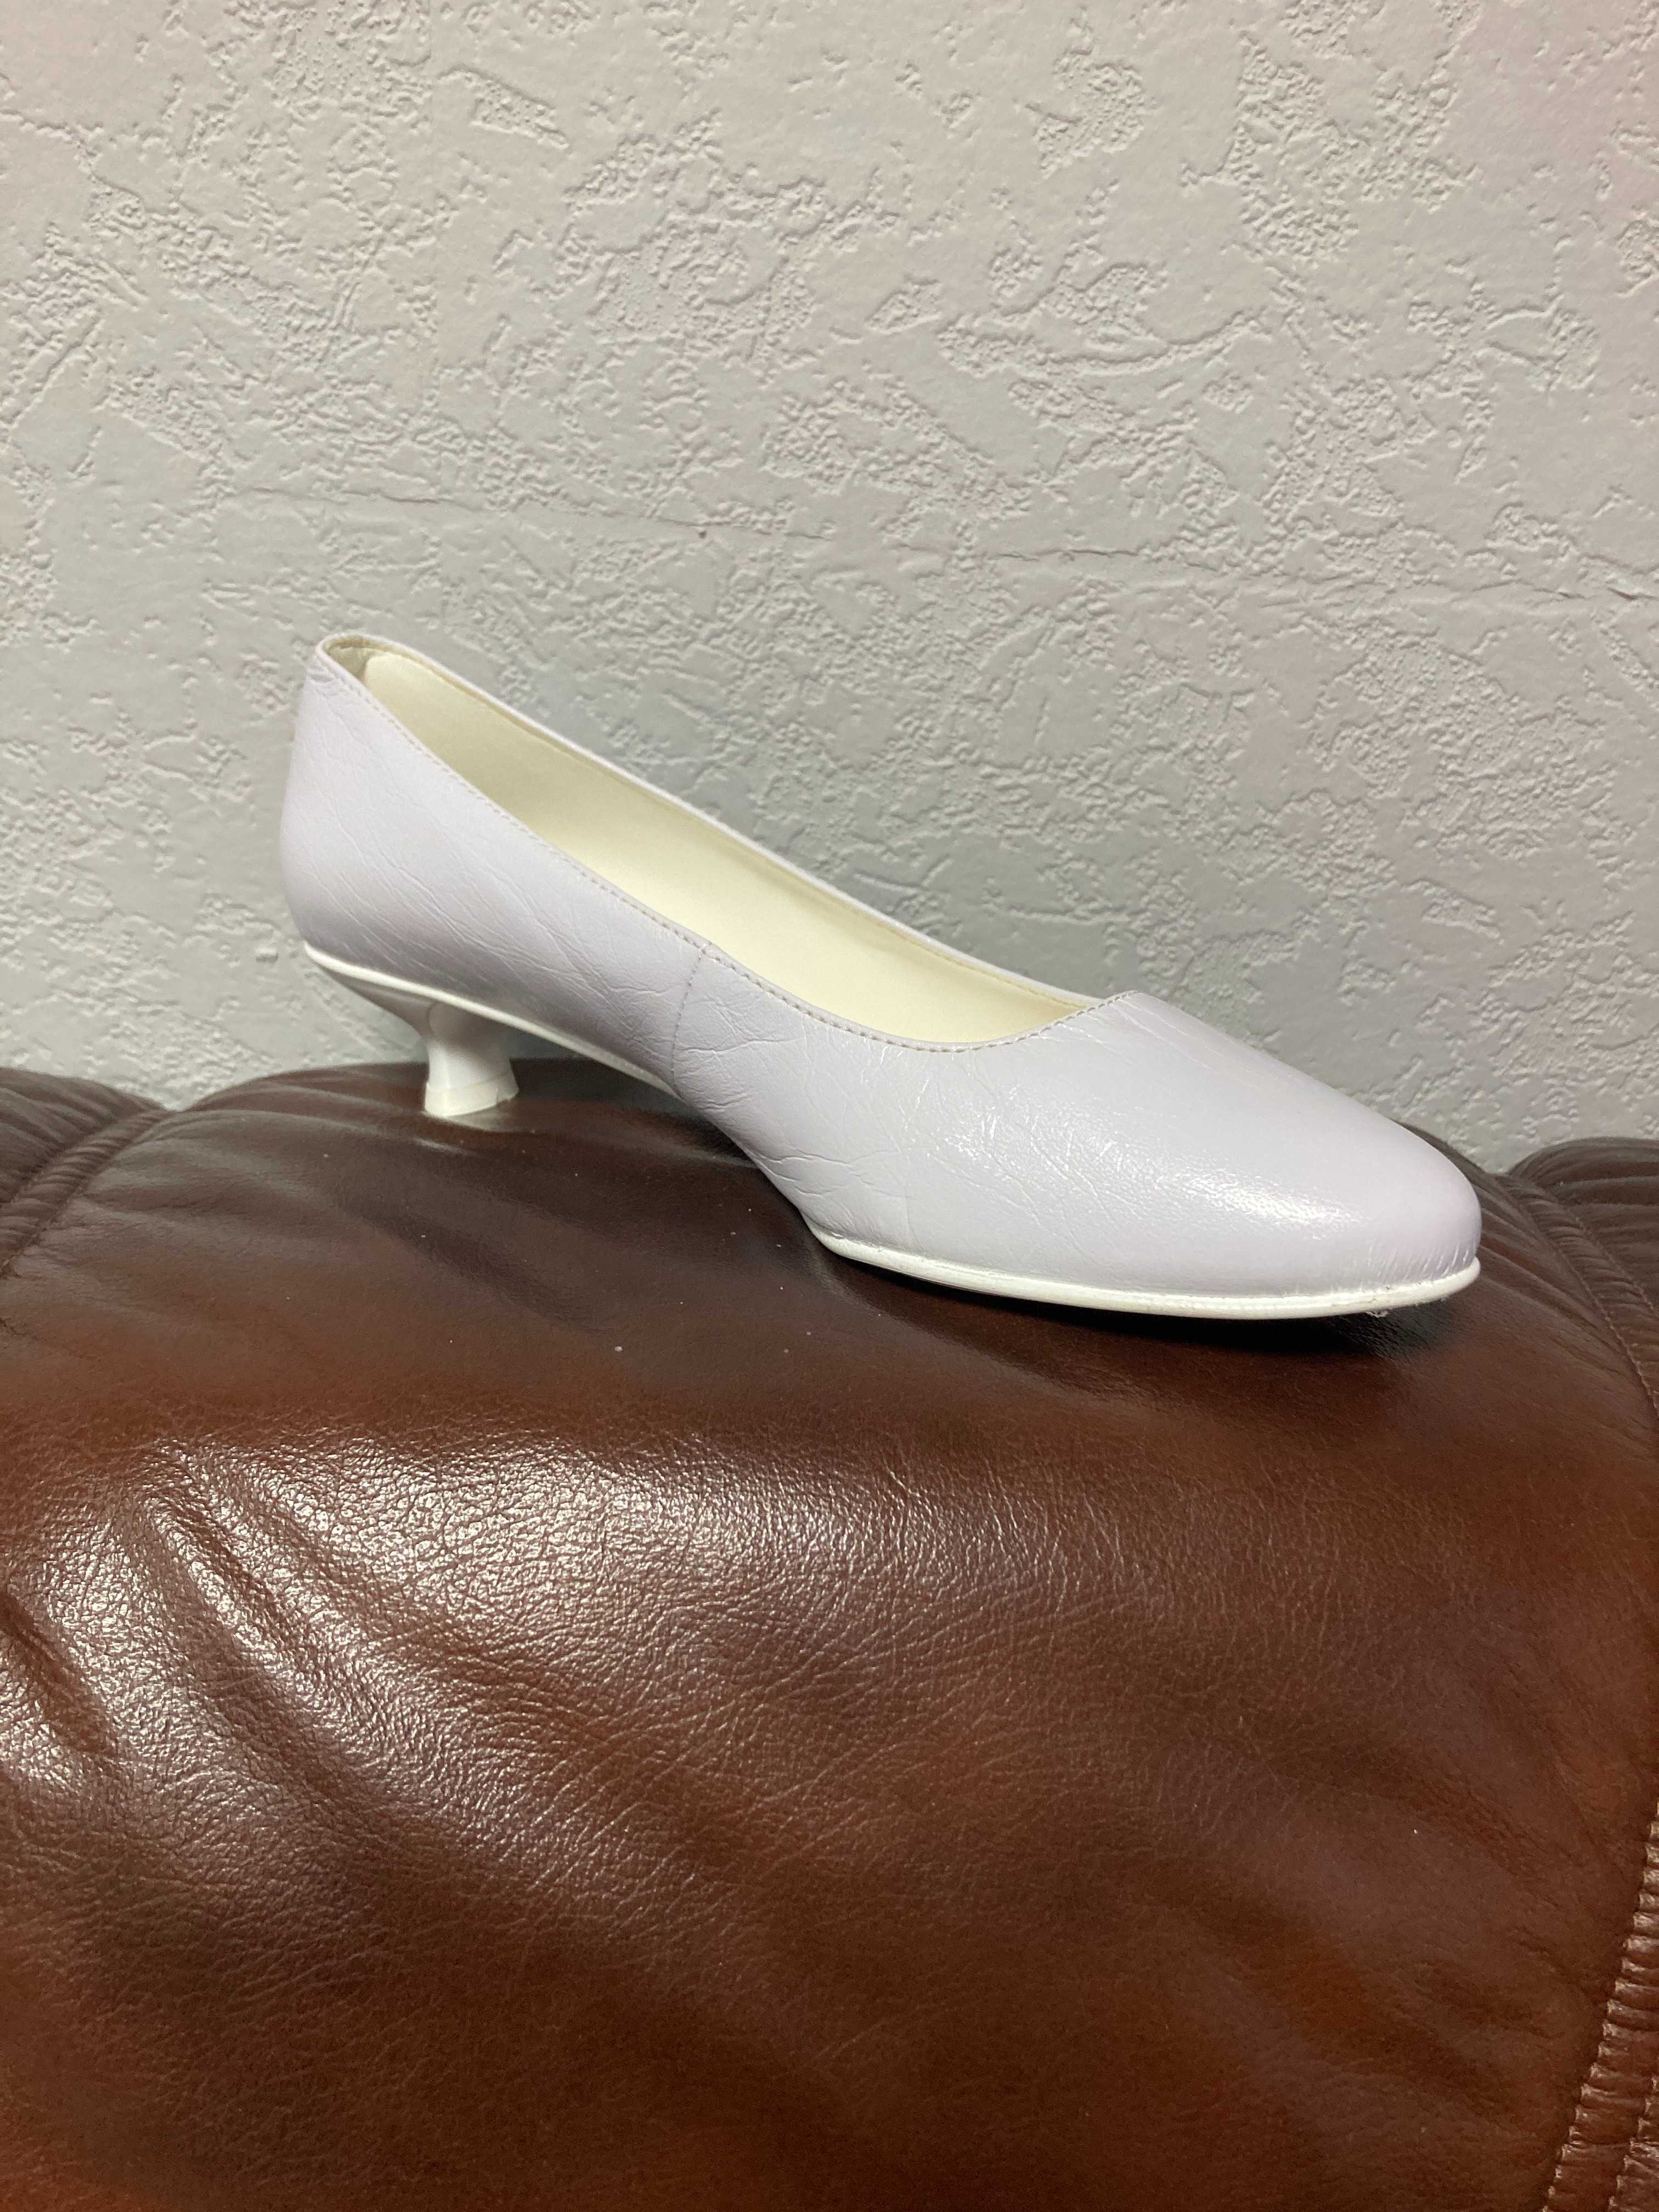 Nowe buty, czółenka białe r. 39, wys. 3 cm, wyprzedaż